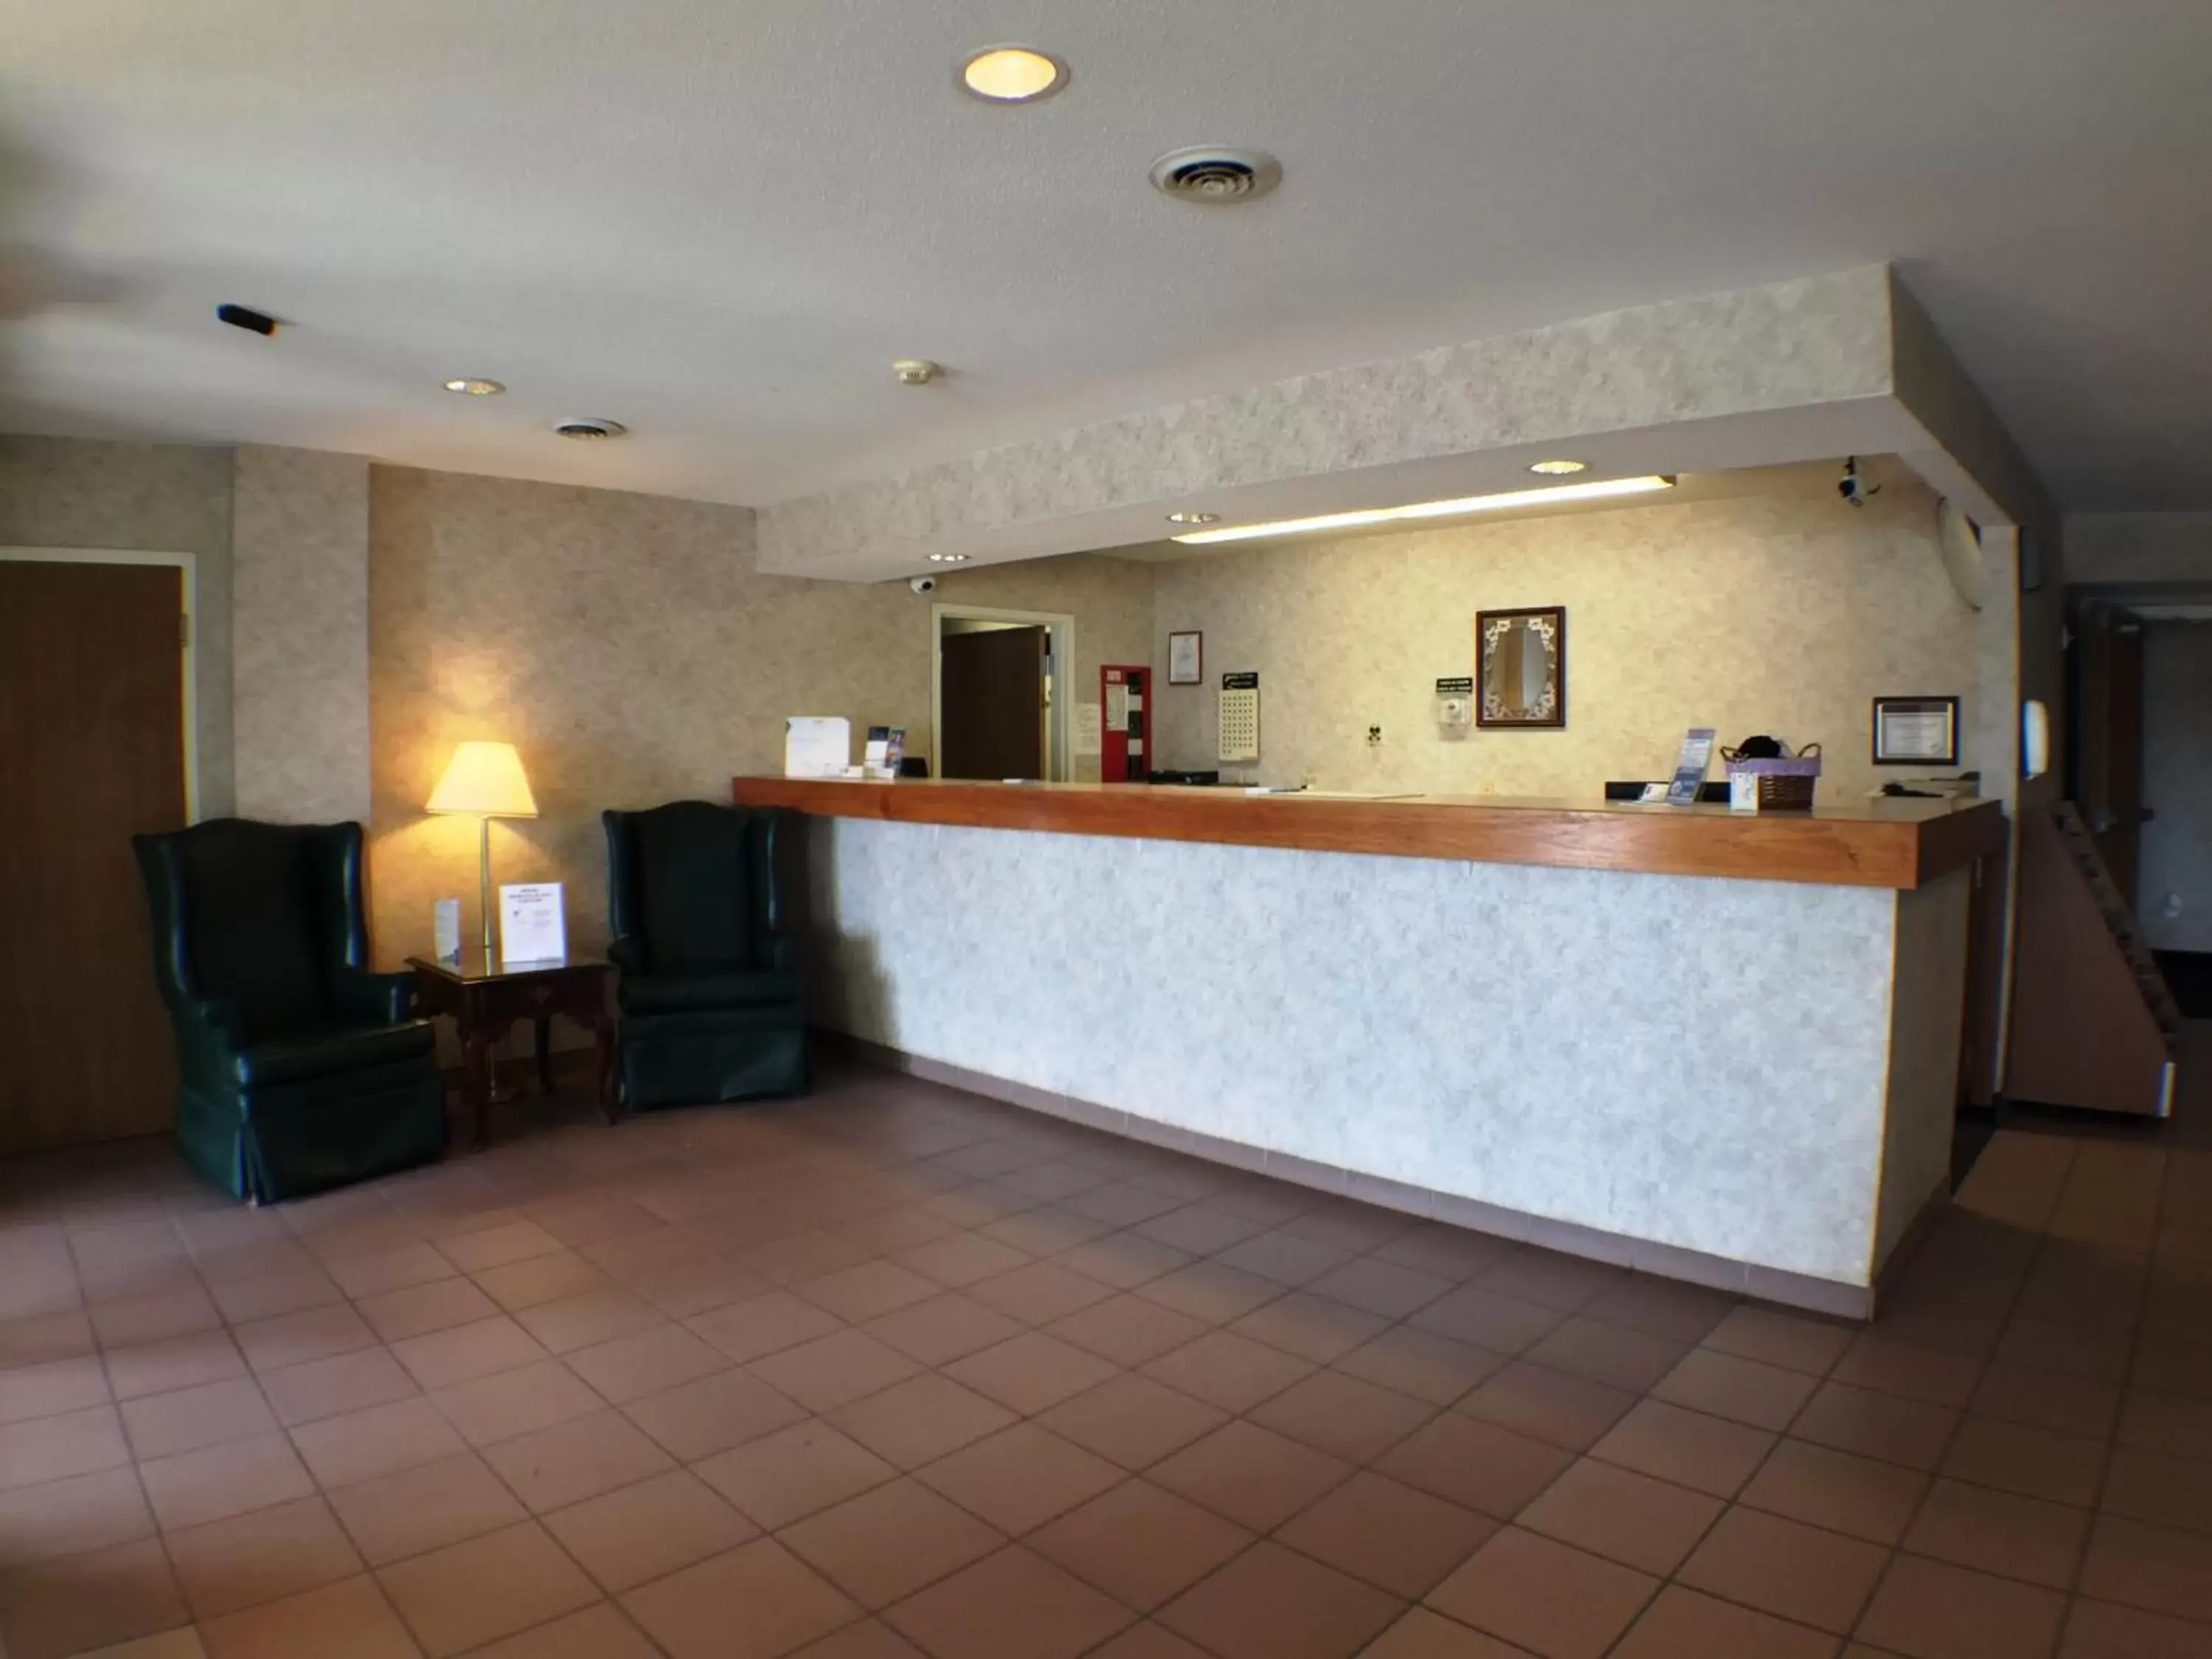 Lobby or reception, Lobby/Reception in Super 8 by Wyndham Canandaigua